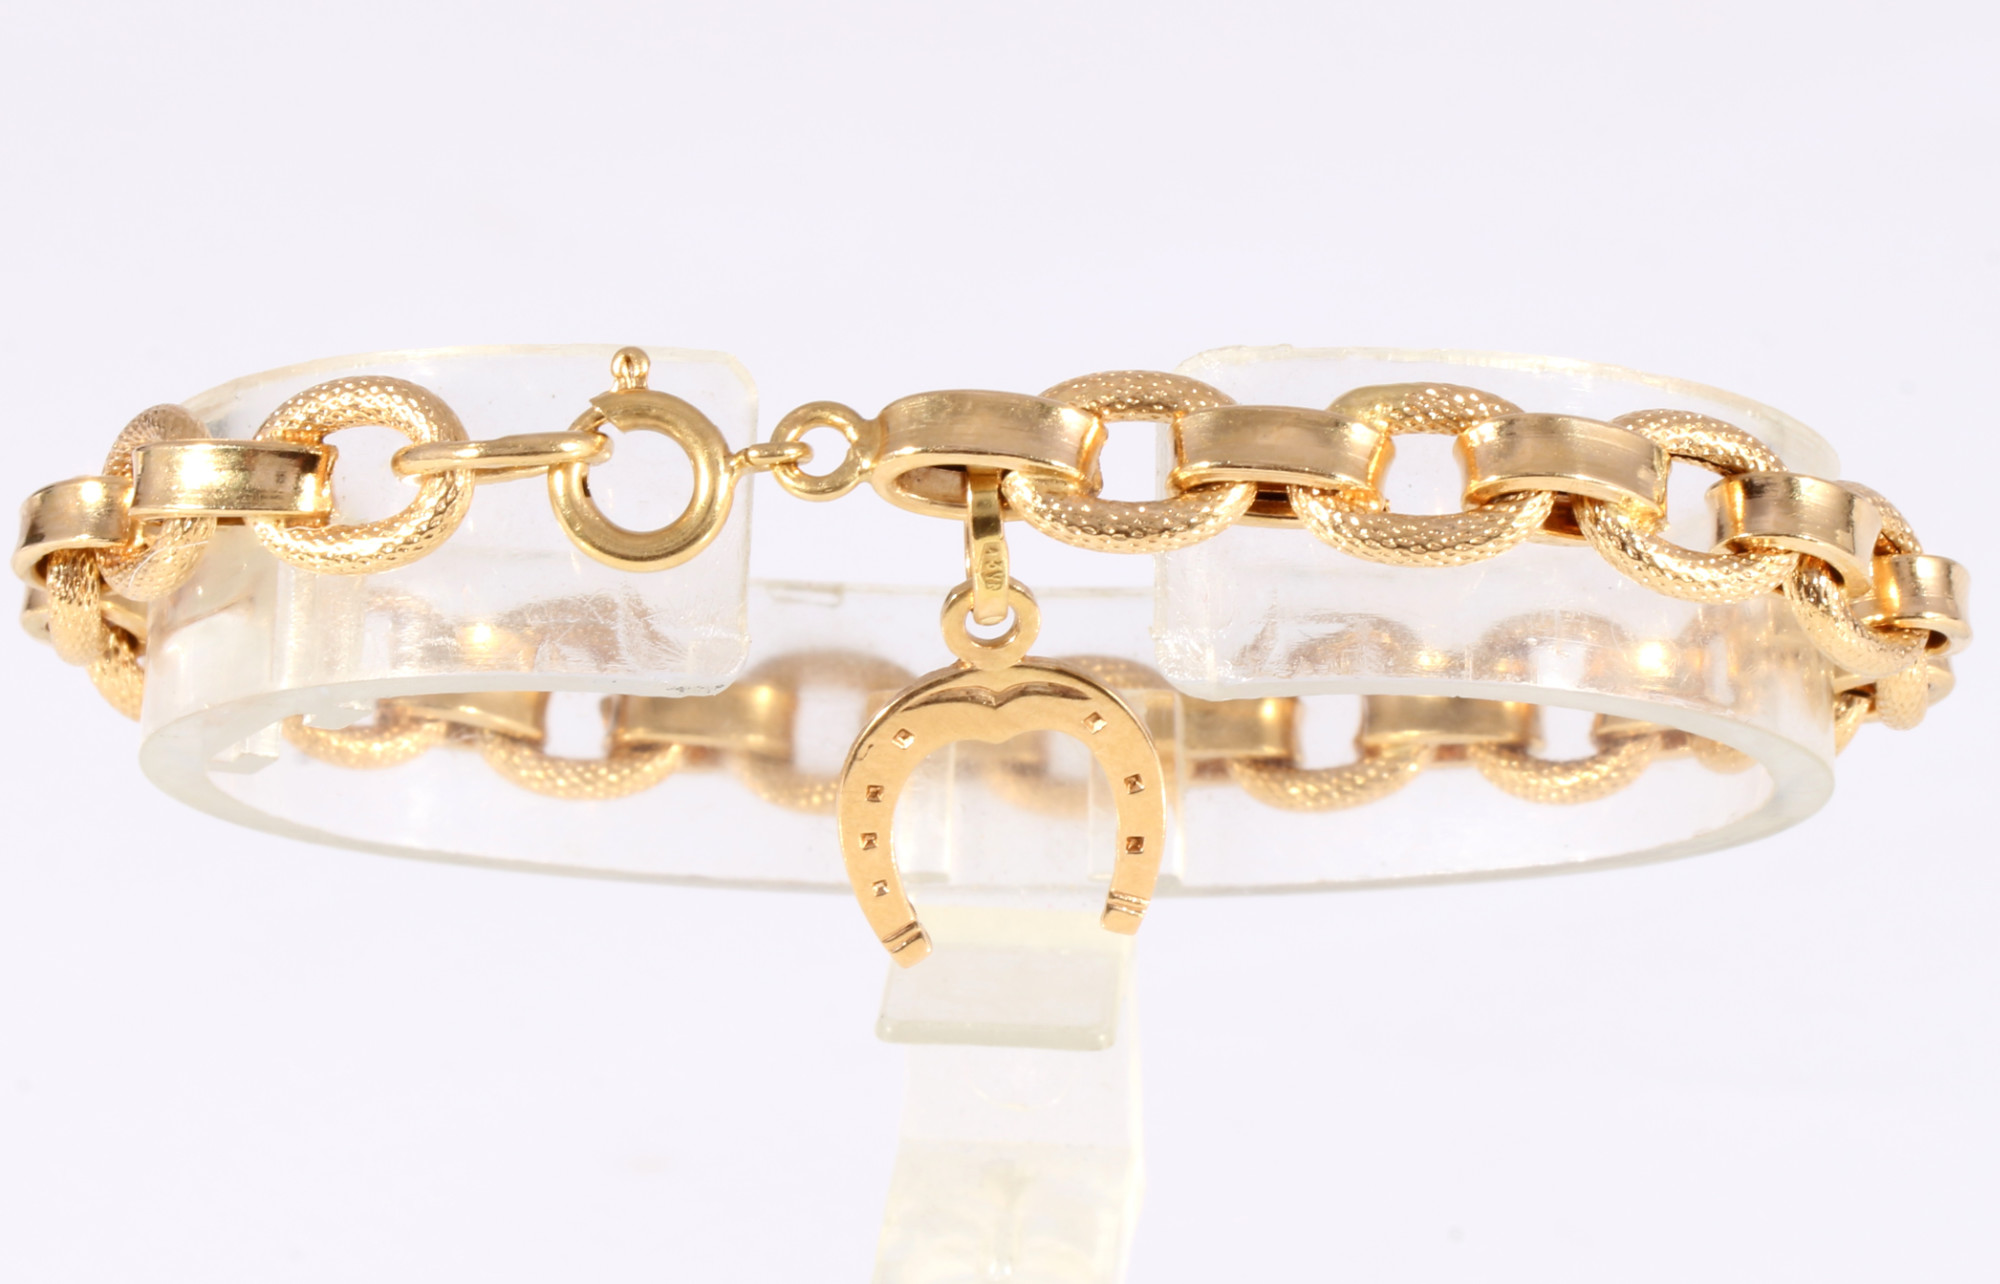 750 gold bracelet with lucky horseshoe, 18K Gold Armband mit Glückshufeisen, - Image 2 of 4